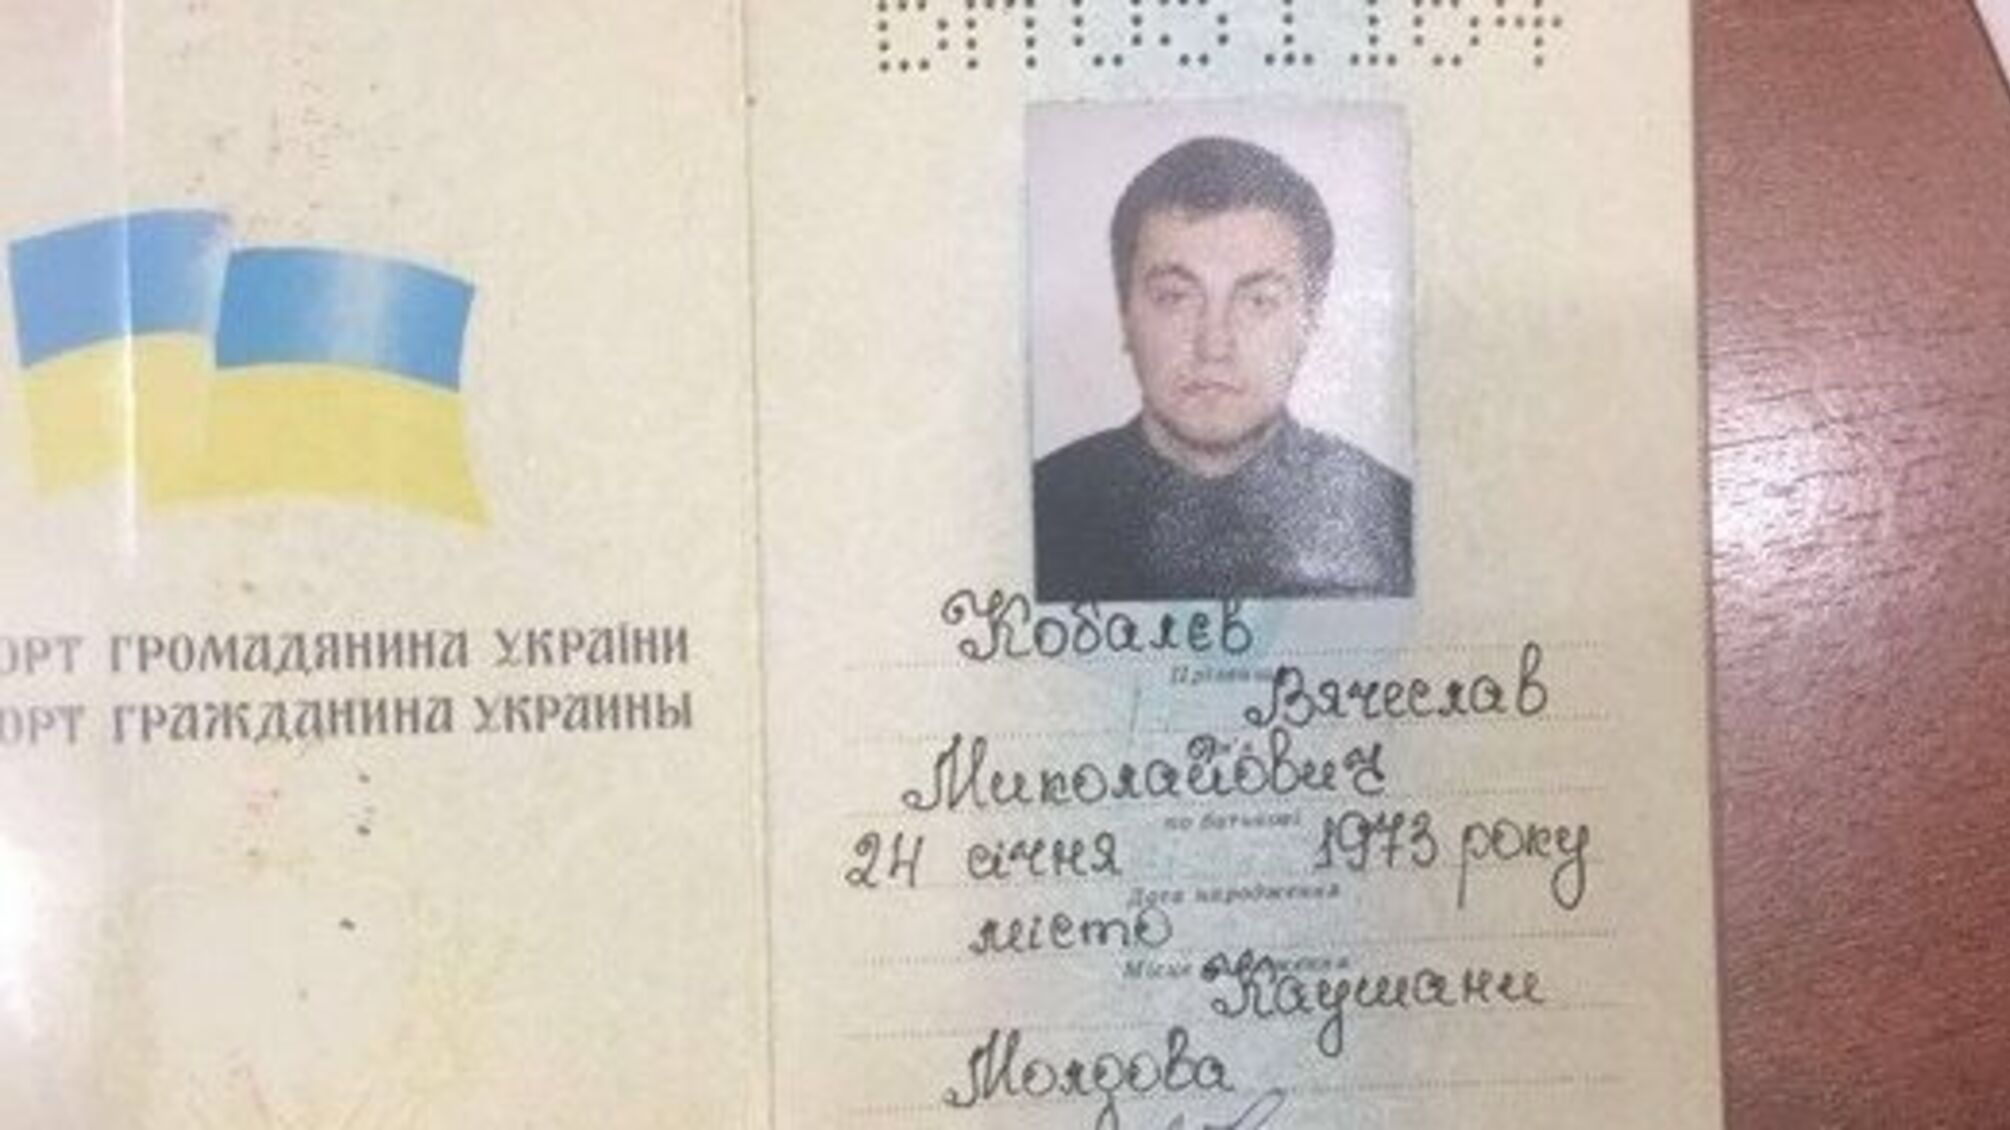 Невизнання громадянства В’ячеслава Коболєва ставить під сумнів європейський вибір України